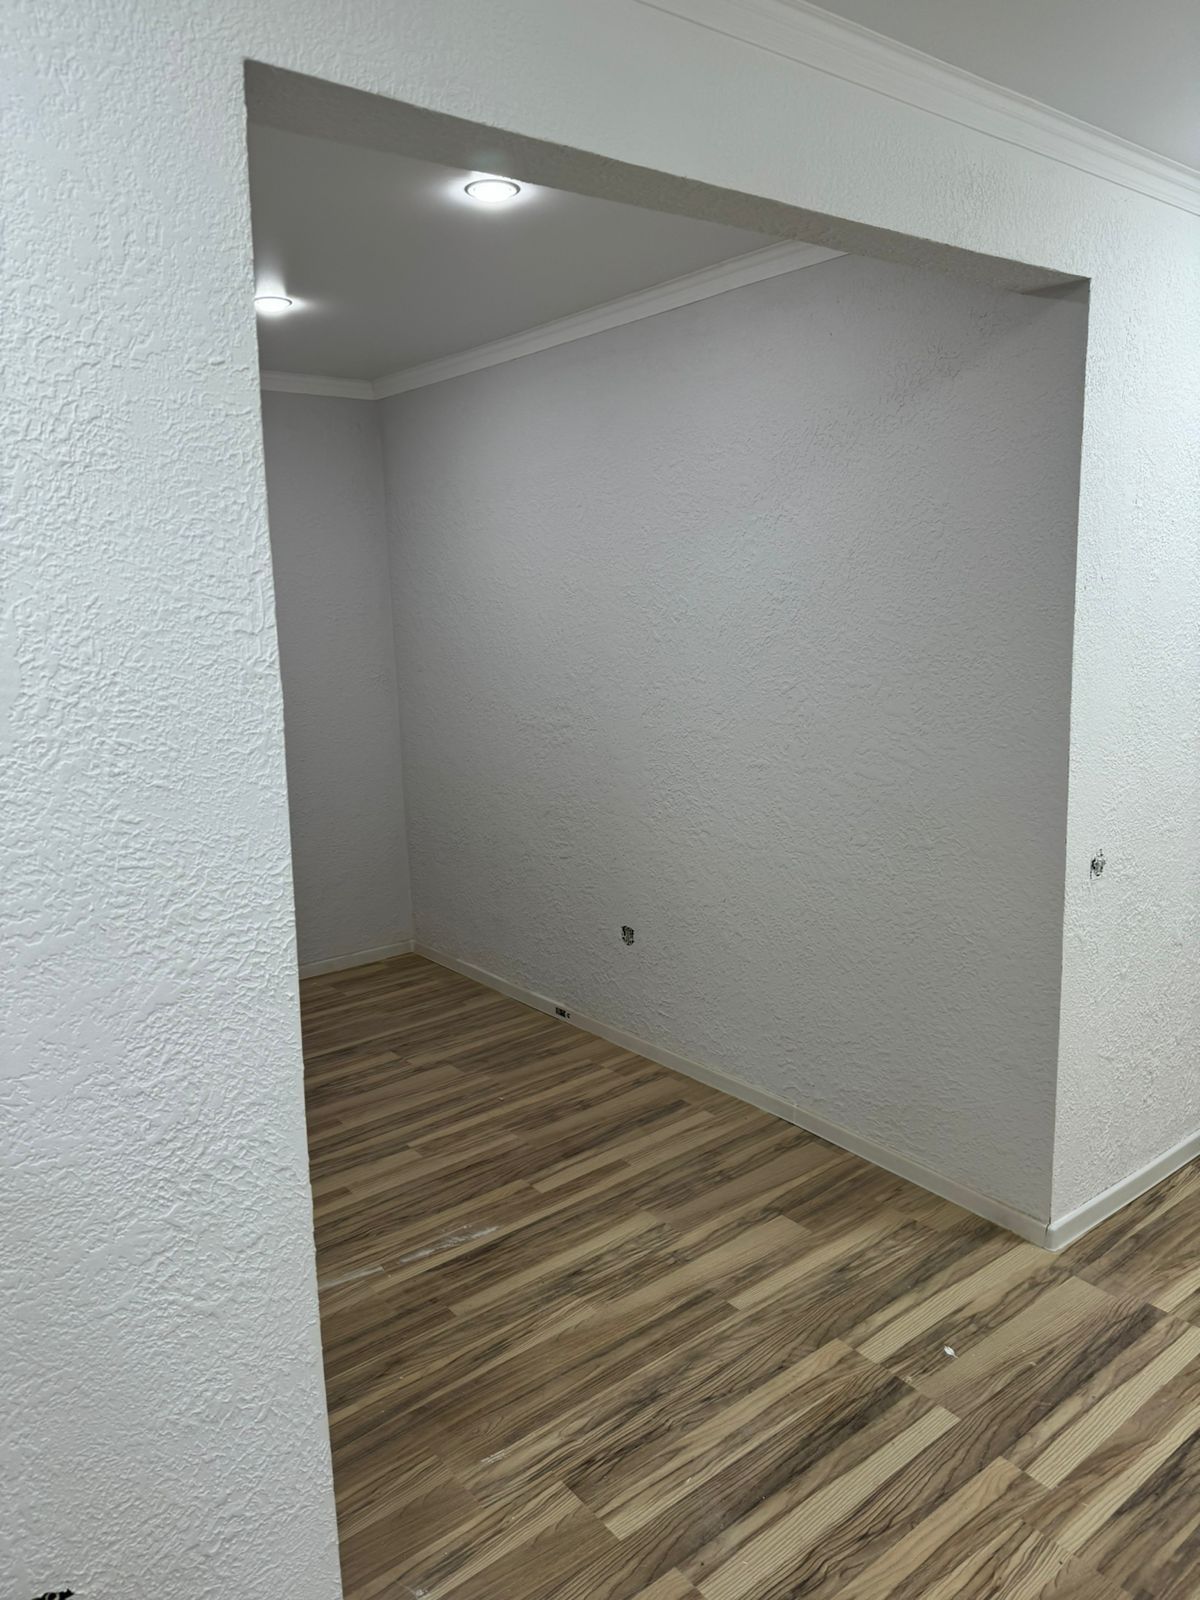 Продам квартиру площадь 50.3 м.кв( Новый ремонт)